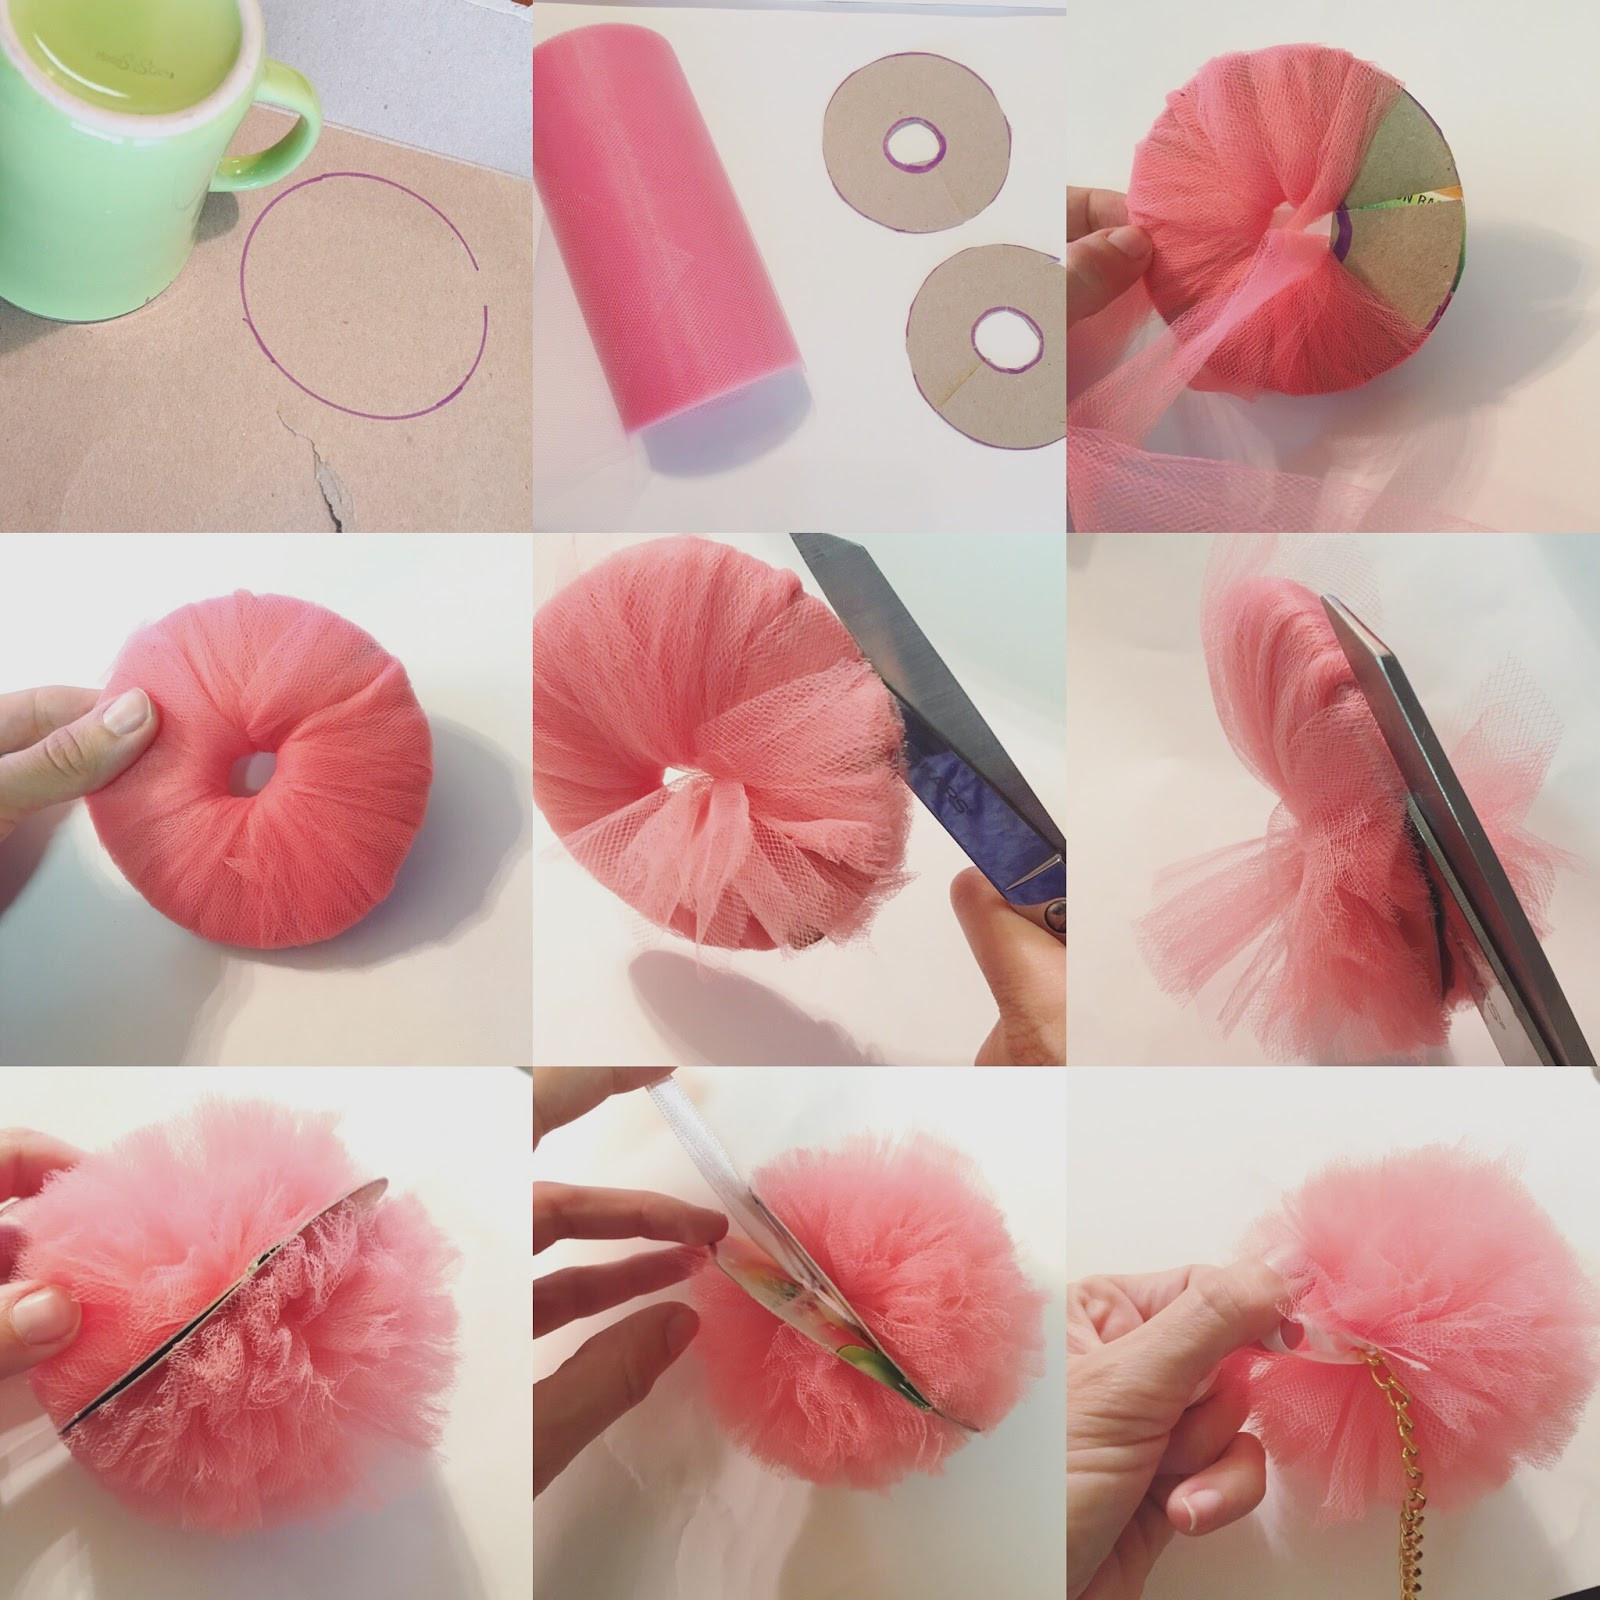 Best ideas about DIY Pom Pom
. Save or Pin Trash To Couture DIY Pom Pom key chain Now.